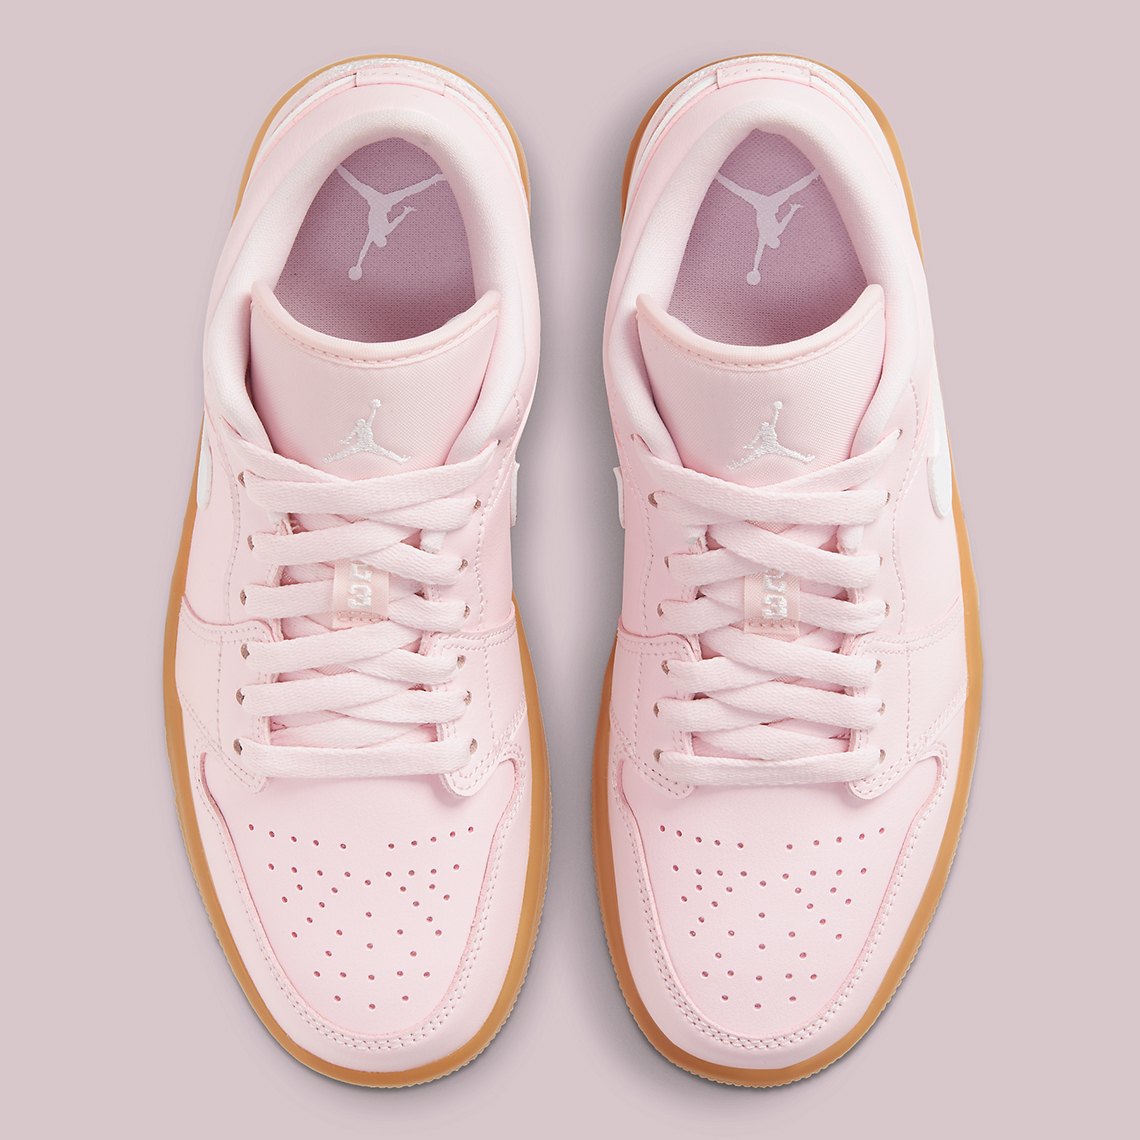 Air Jordan 1 Low Womens Arctic Pink Gum Light Brown Dc0774 601 8